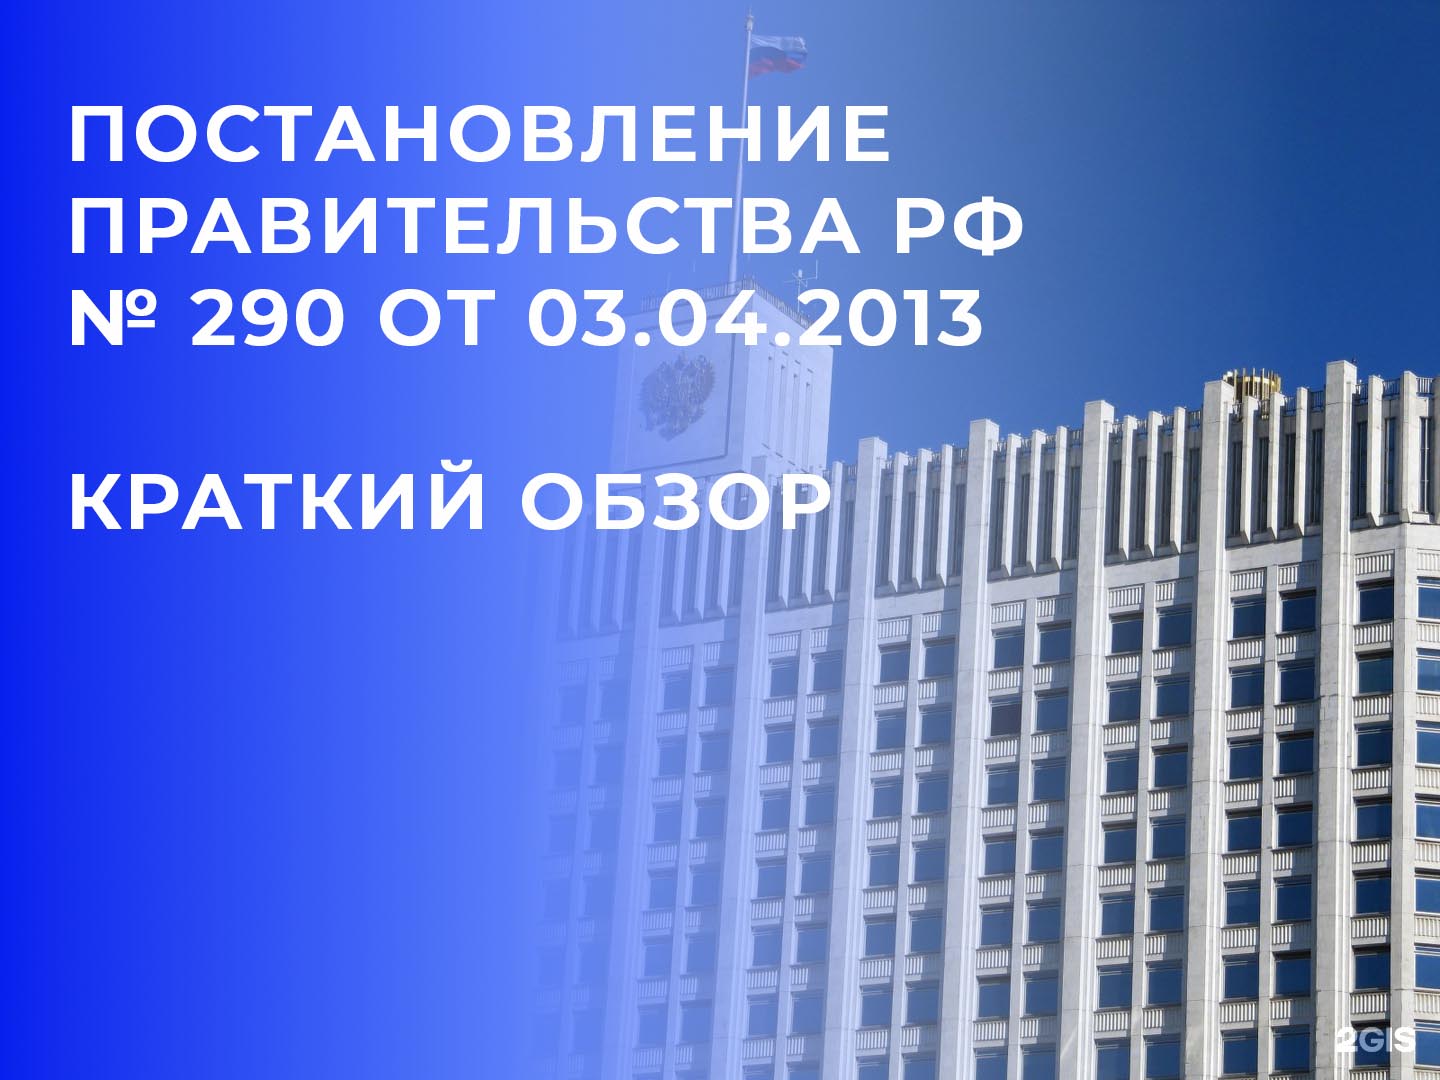 Постановление Правительства РФ № 290 от 03.04.2013 краткий обзор